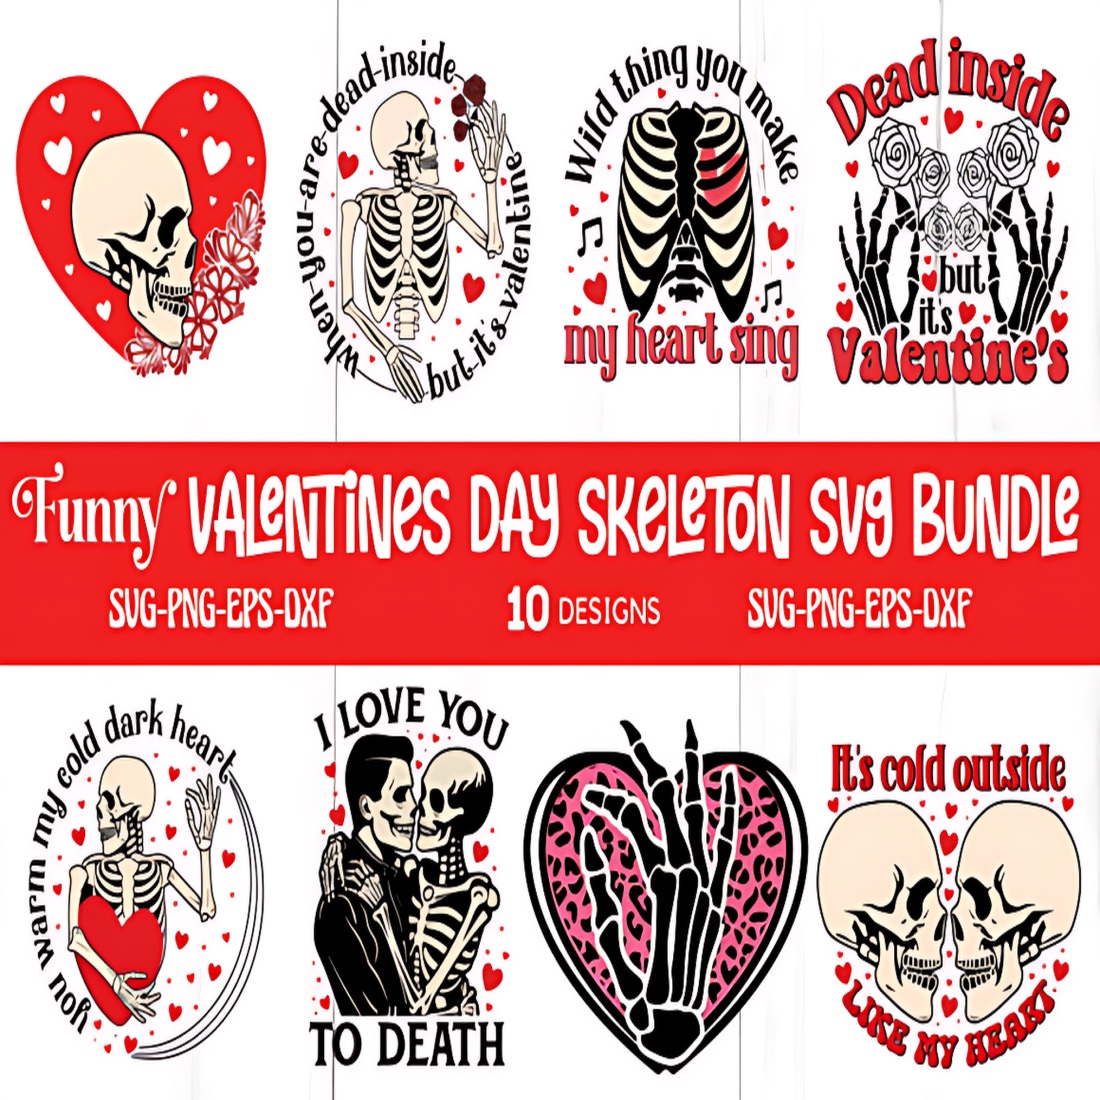 Funny Valentine Day Skeleton Svg Bundle cover image.